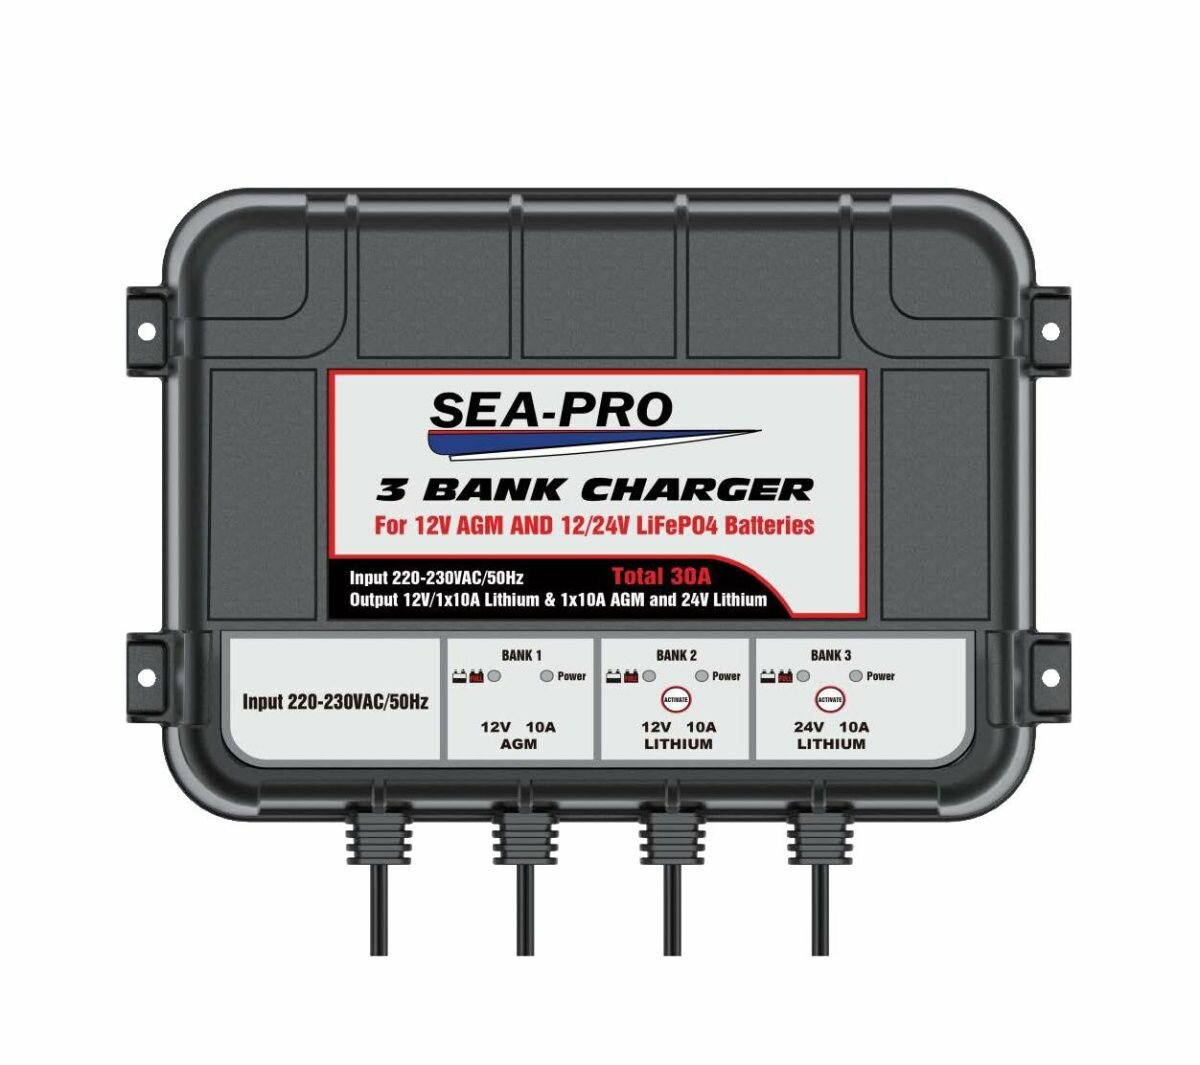 Зарядное устройство SEA-PRO ТЕ4-0287 (3х12В LiFePo4) морского исполнения для тяговых / сервисных аккумуляторов LiFePo4, 3 выхода по 12 вольт для лиферных / литиевых батарей (АКБ) ток заряда 3х10A